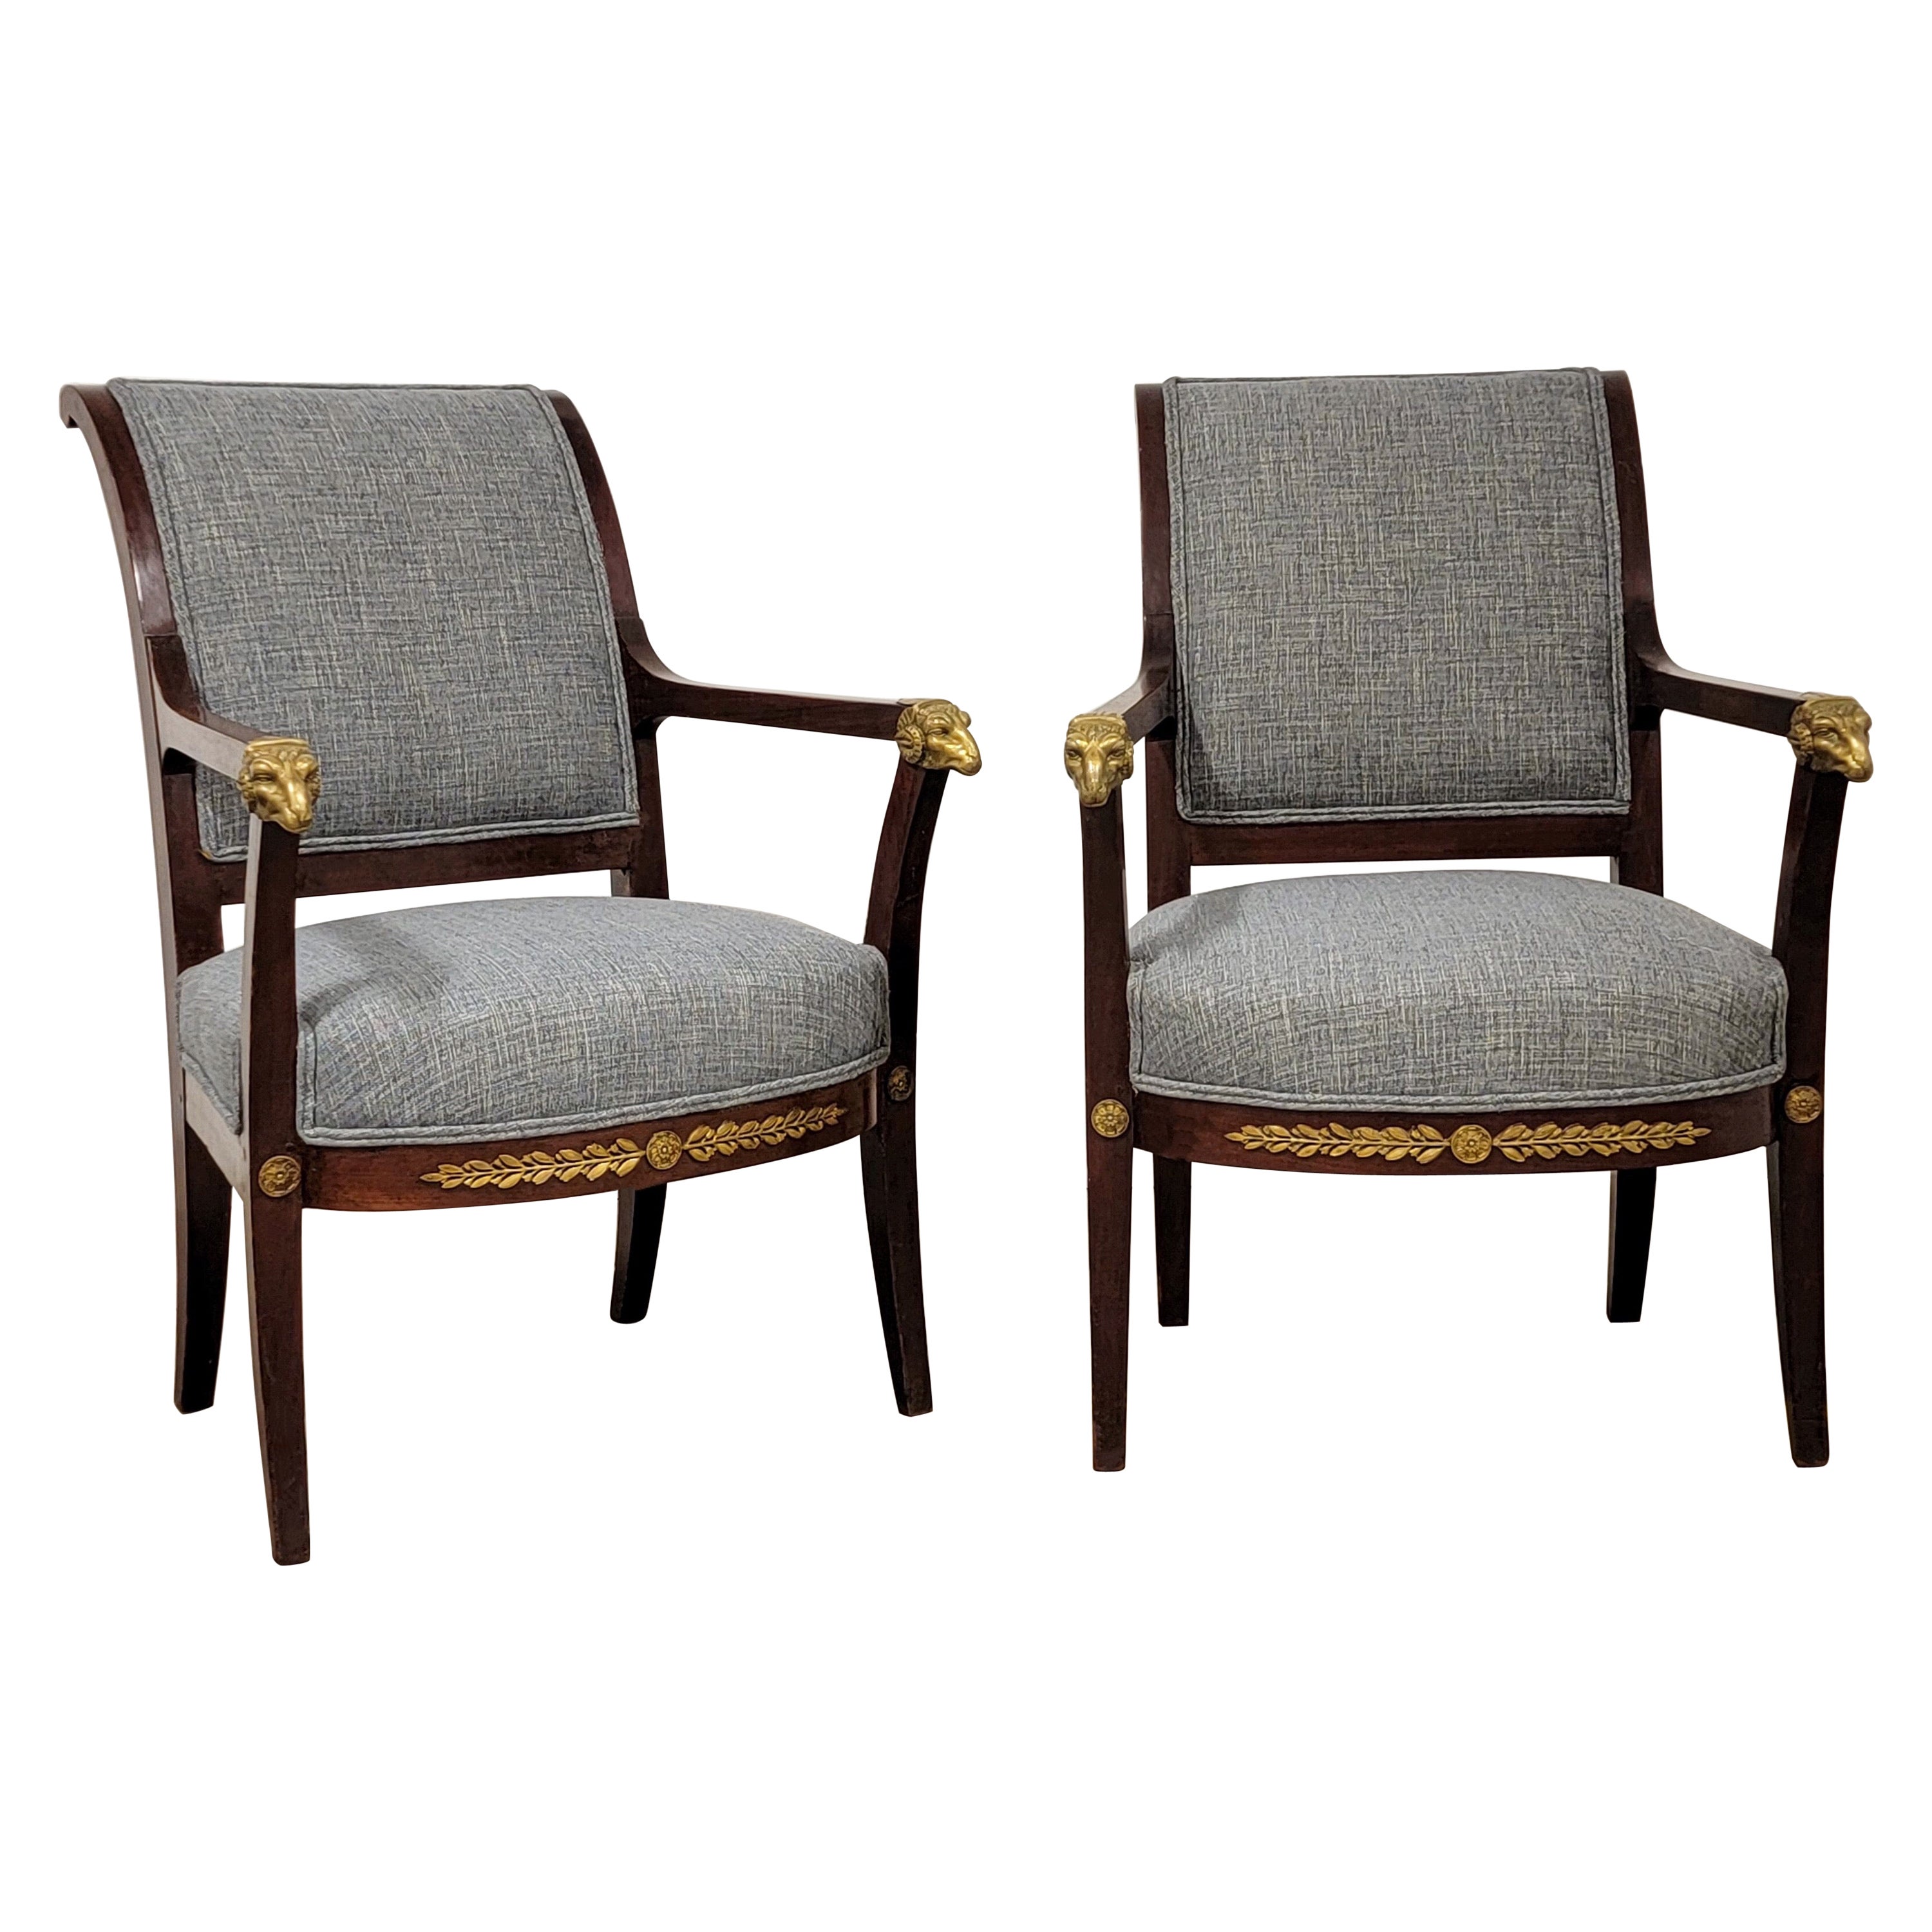 19th-C. Paire de chaises bergères italiennes de style néo-classique avec béliers en bronze moulé